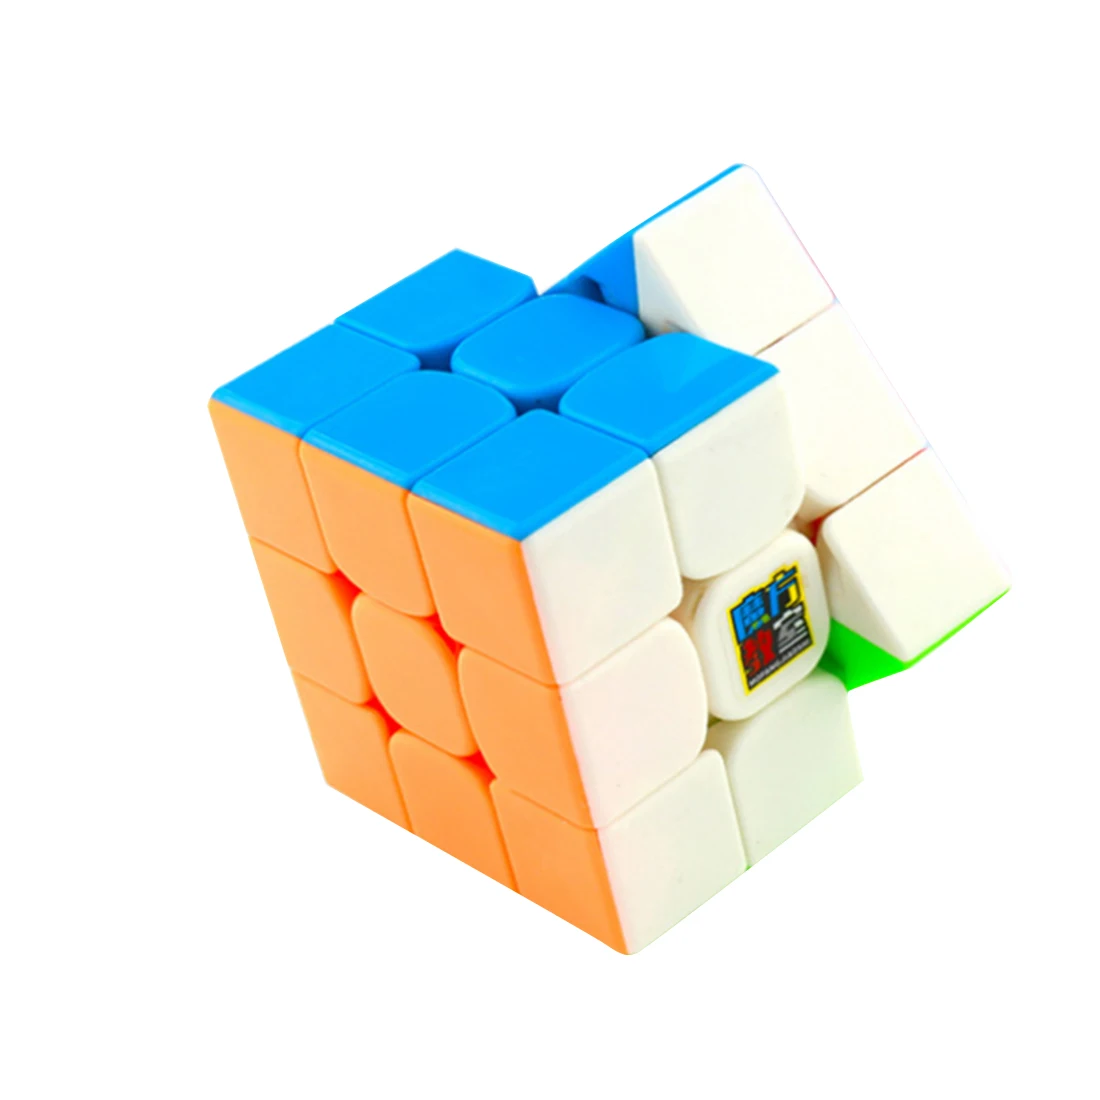 Mofangjiaoshi MFJS Cubing классная игрушка-головоломка MF3RS2 3x3x3 волшебный куб для начинающих черный прозрачный пазл - Цвет: Red